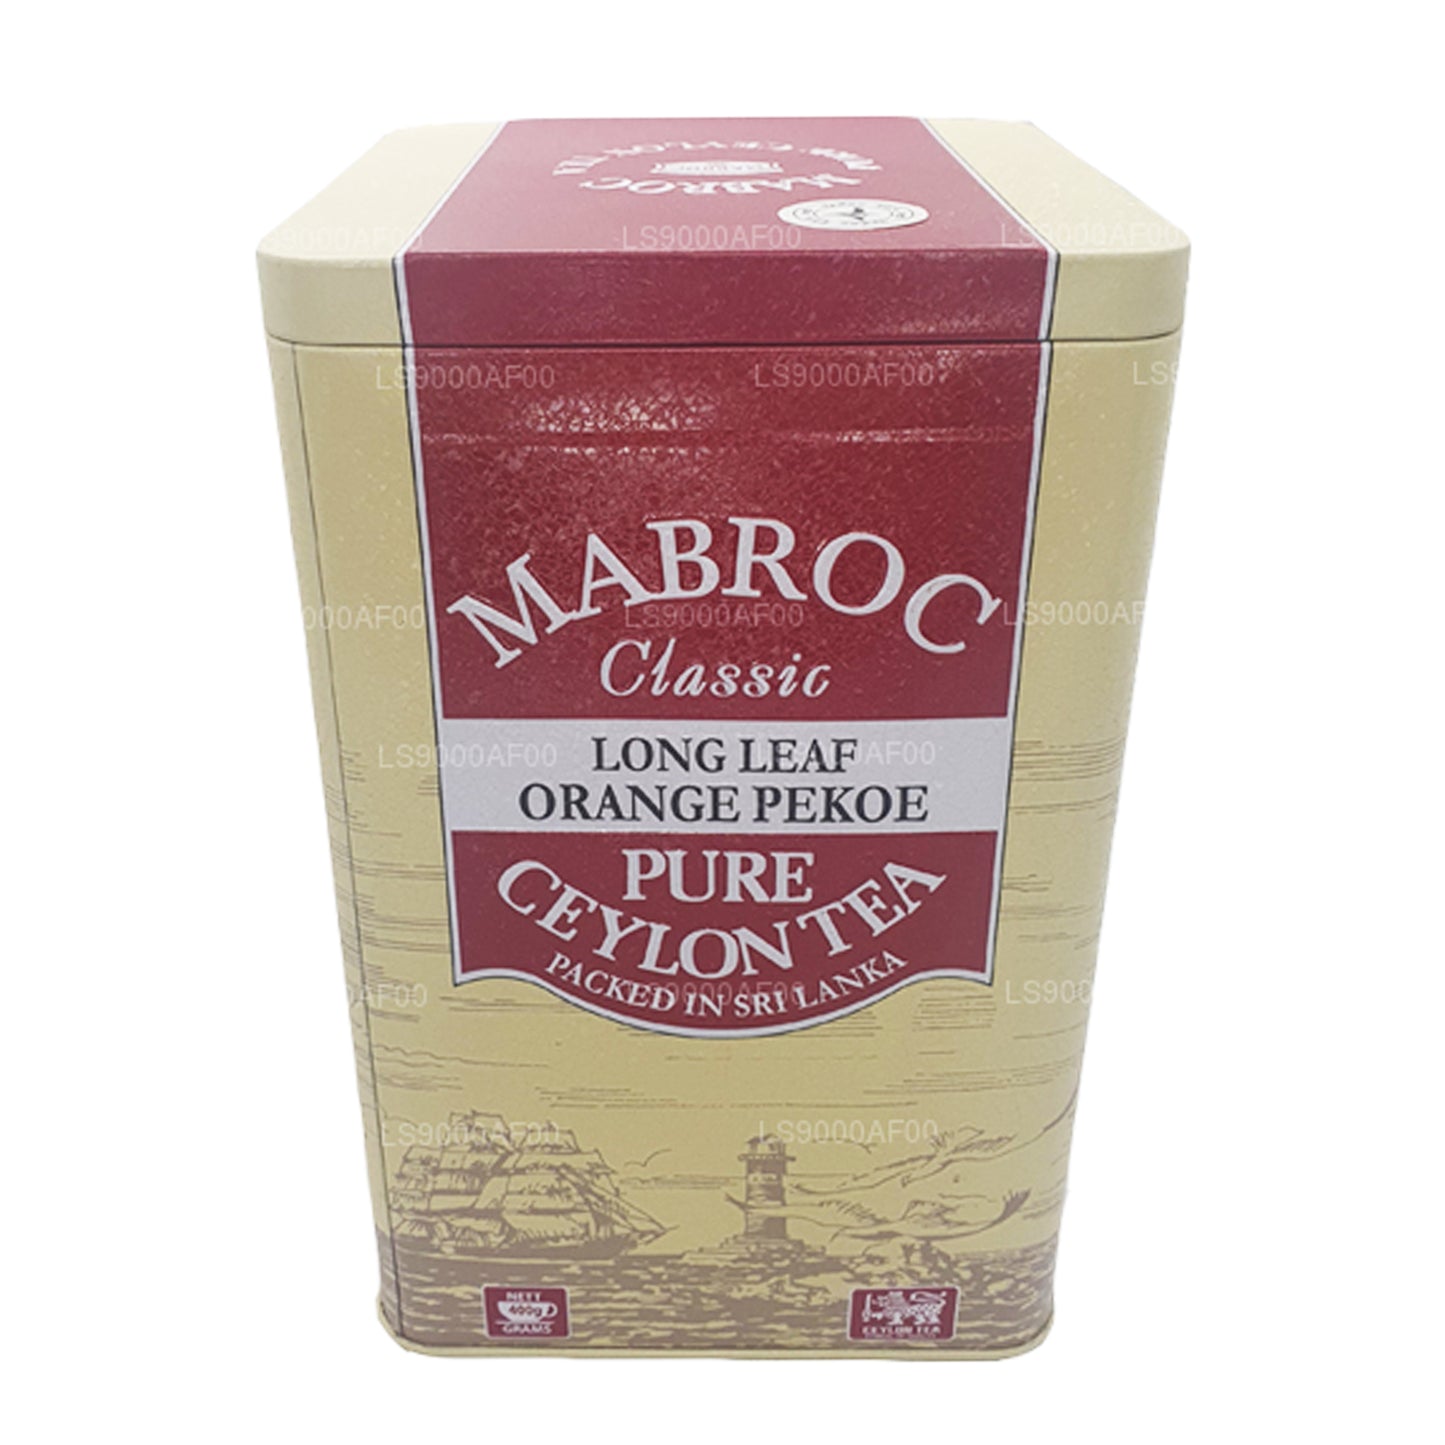 Mabroc Classic Długi Liść Pomarańczowy Peoke Herbata (400g)